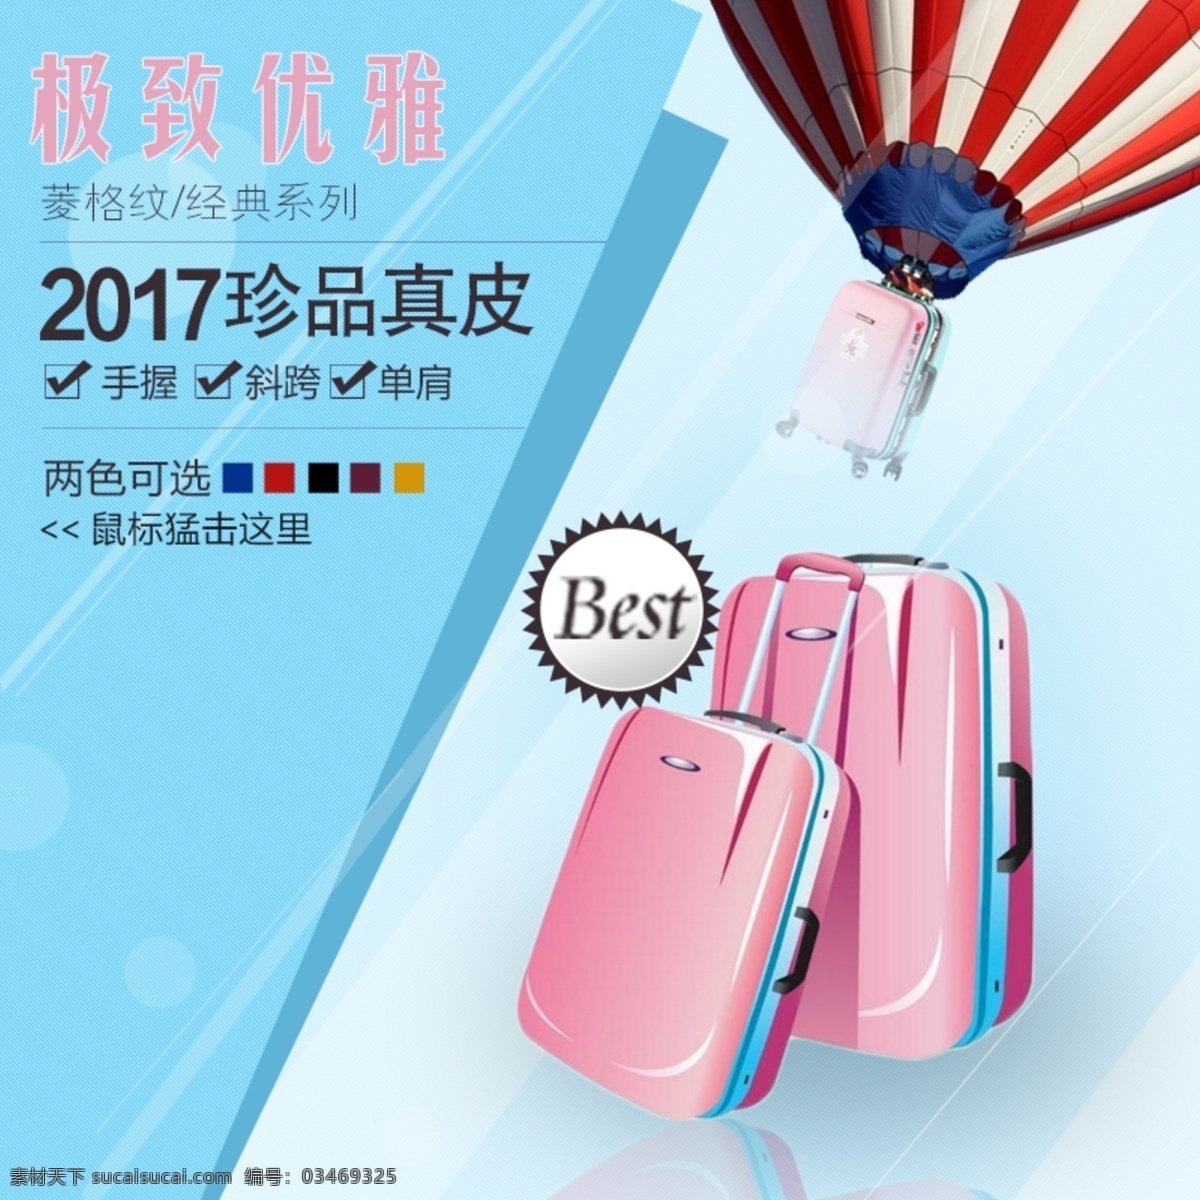 旅行 箱包 节 明星 季 行李箱 粉色 电商 主 图 旅行箱包节 促销活动 通用模板